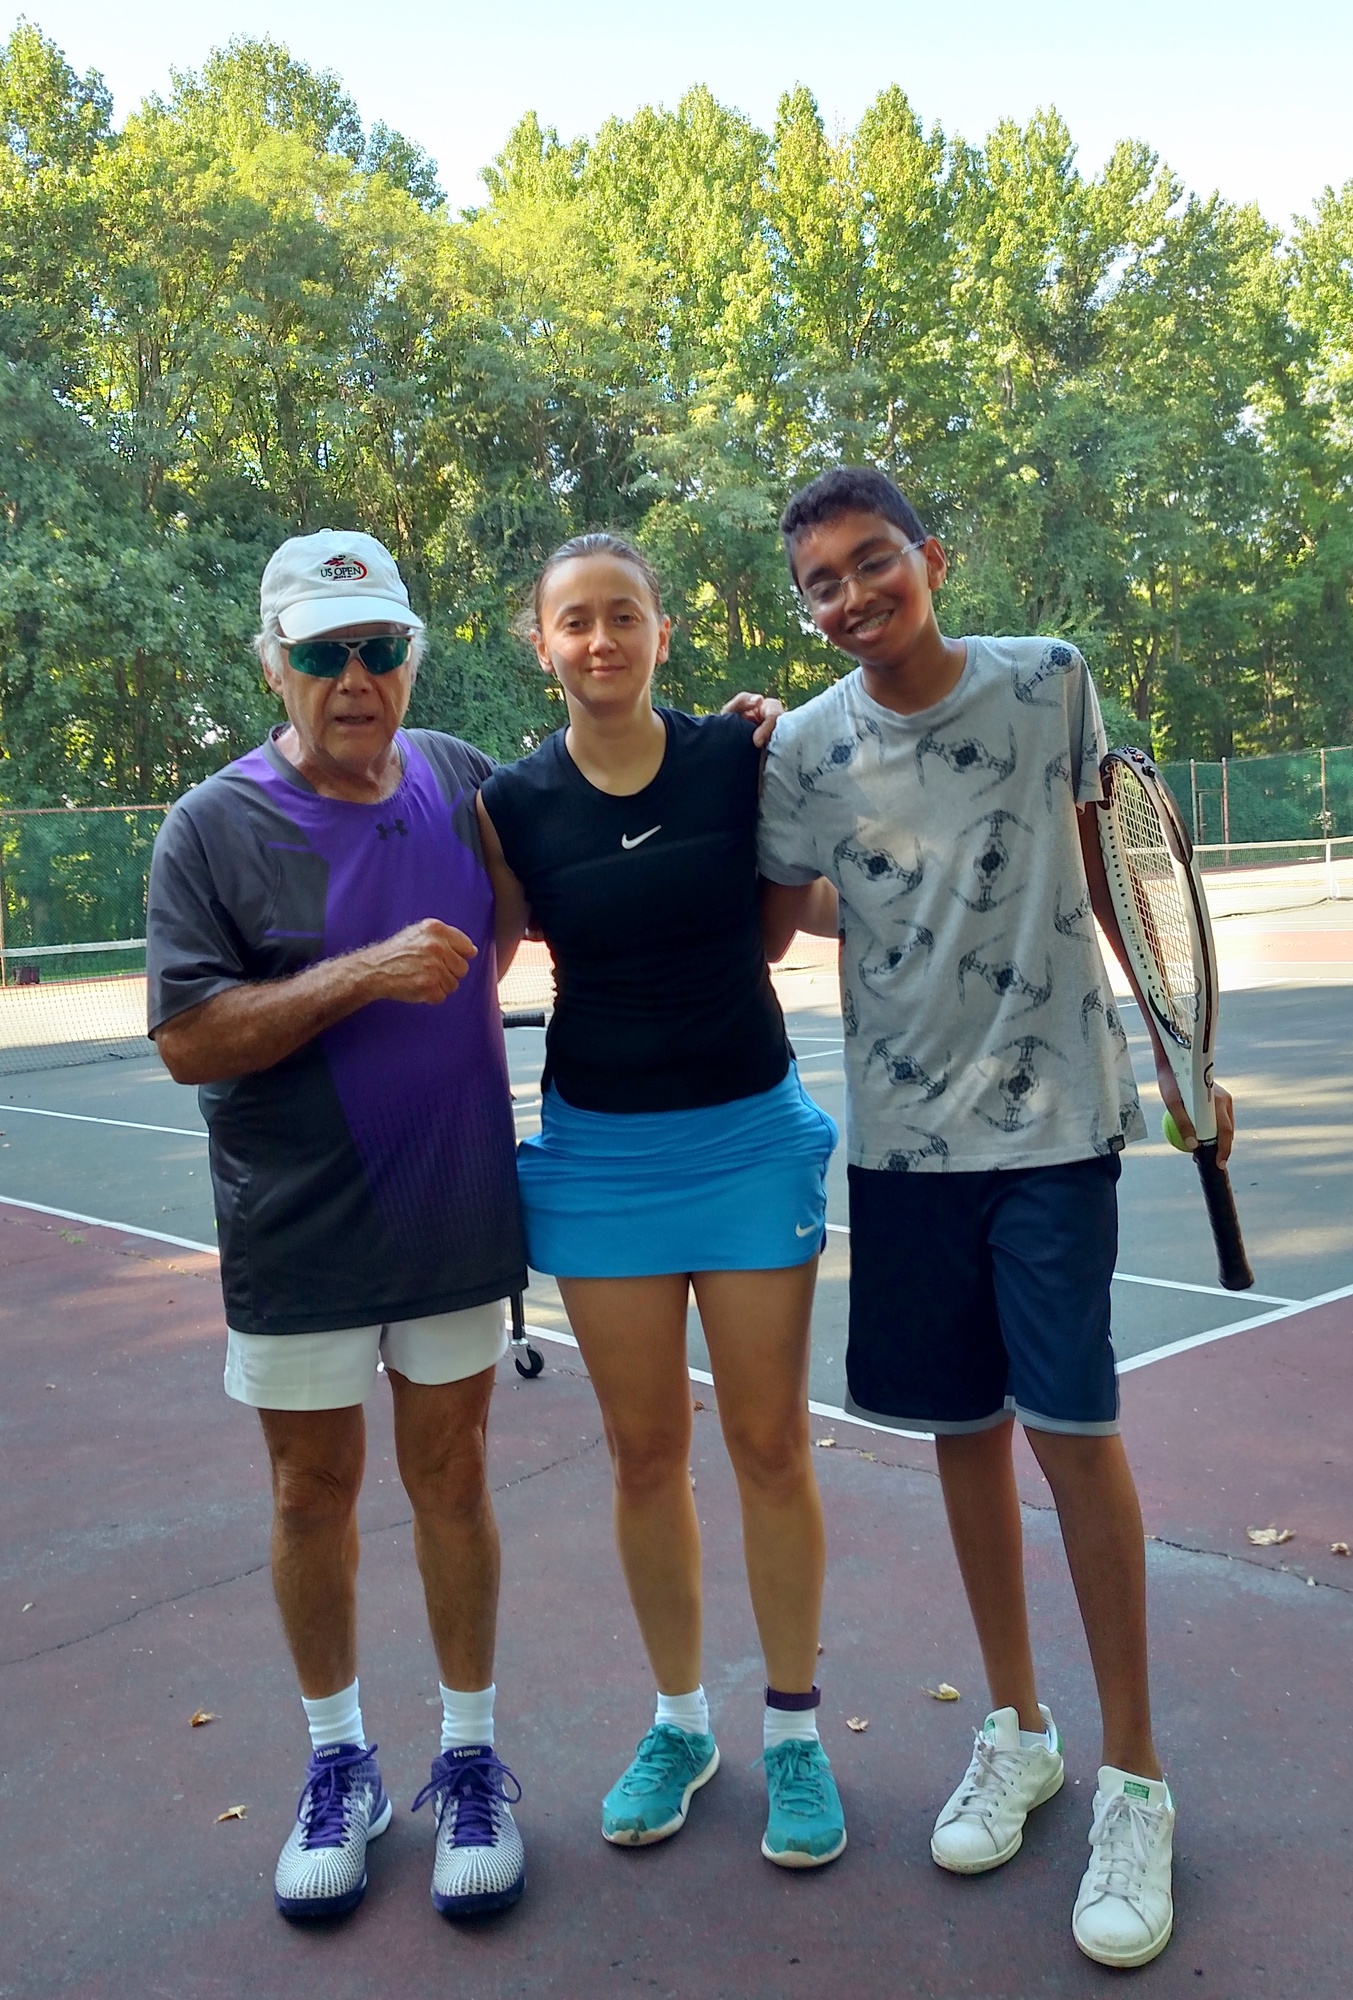 John G. teaches tennis lessons in Jackson, NN